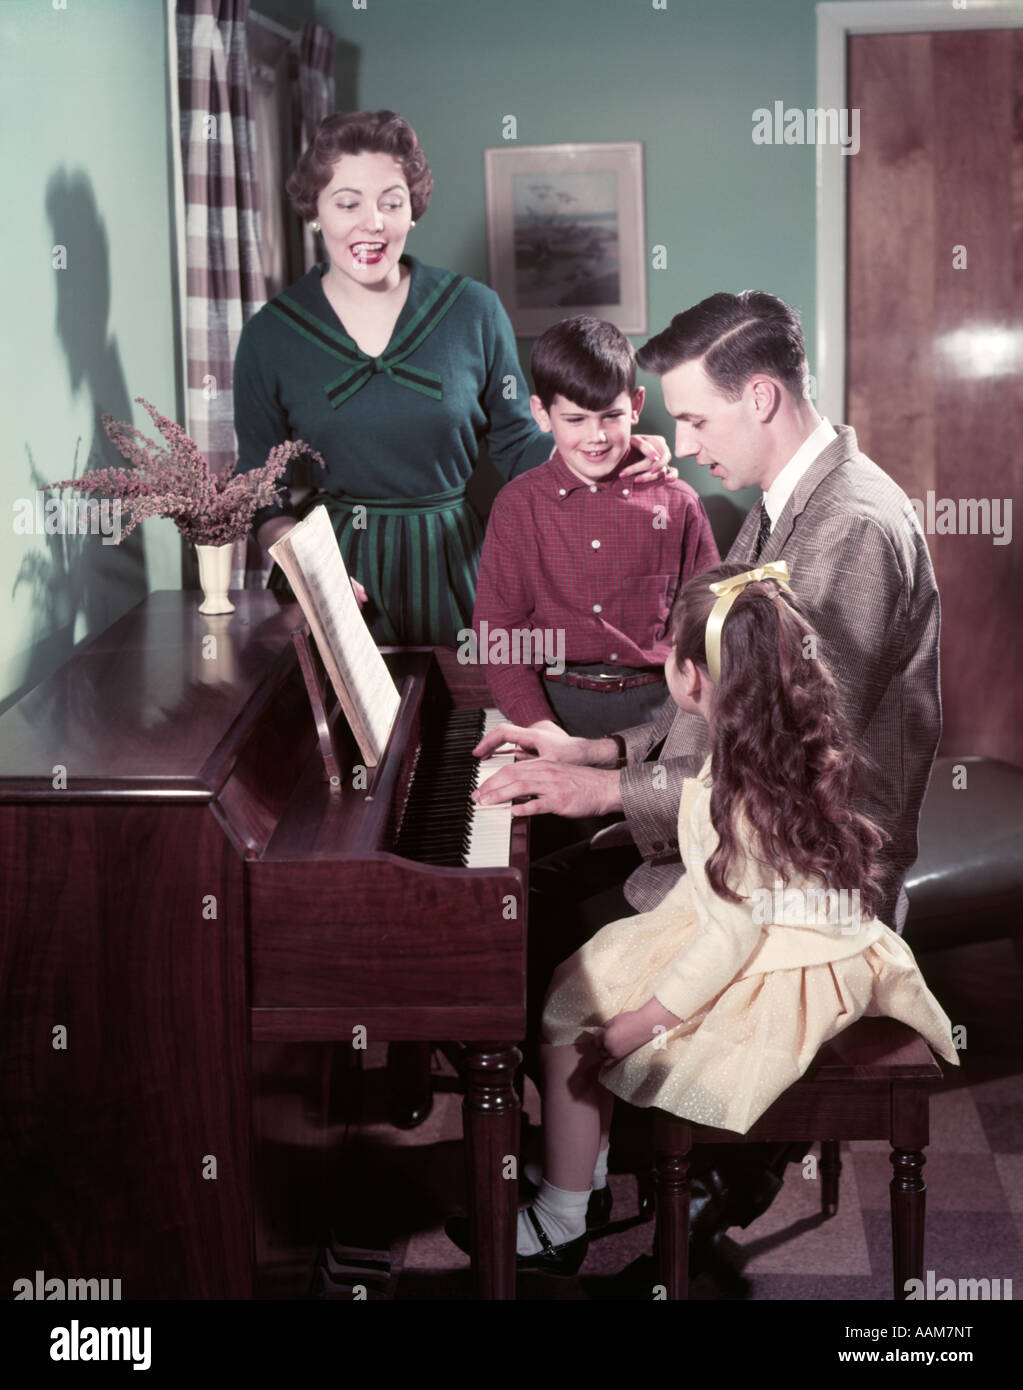 1950 FAMILLE 4 PÈRE JOUER DU PIANO L'HOMME FEMME Garçon Fille Mère Fils Fille CHANTER DEBOUT BANC DE VASE DE SALON Banque D'Images